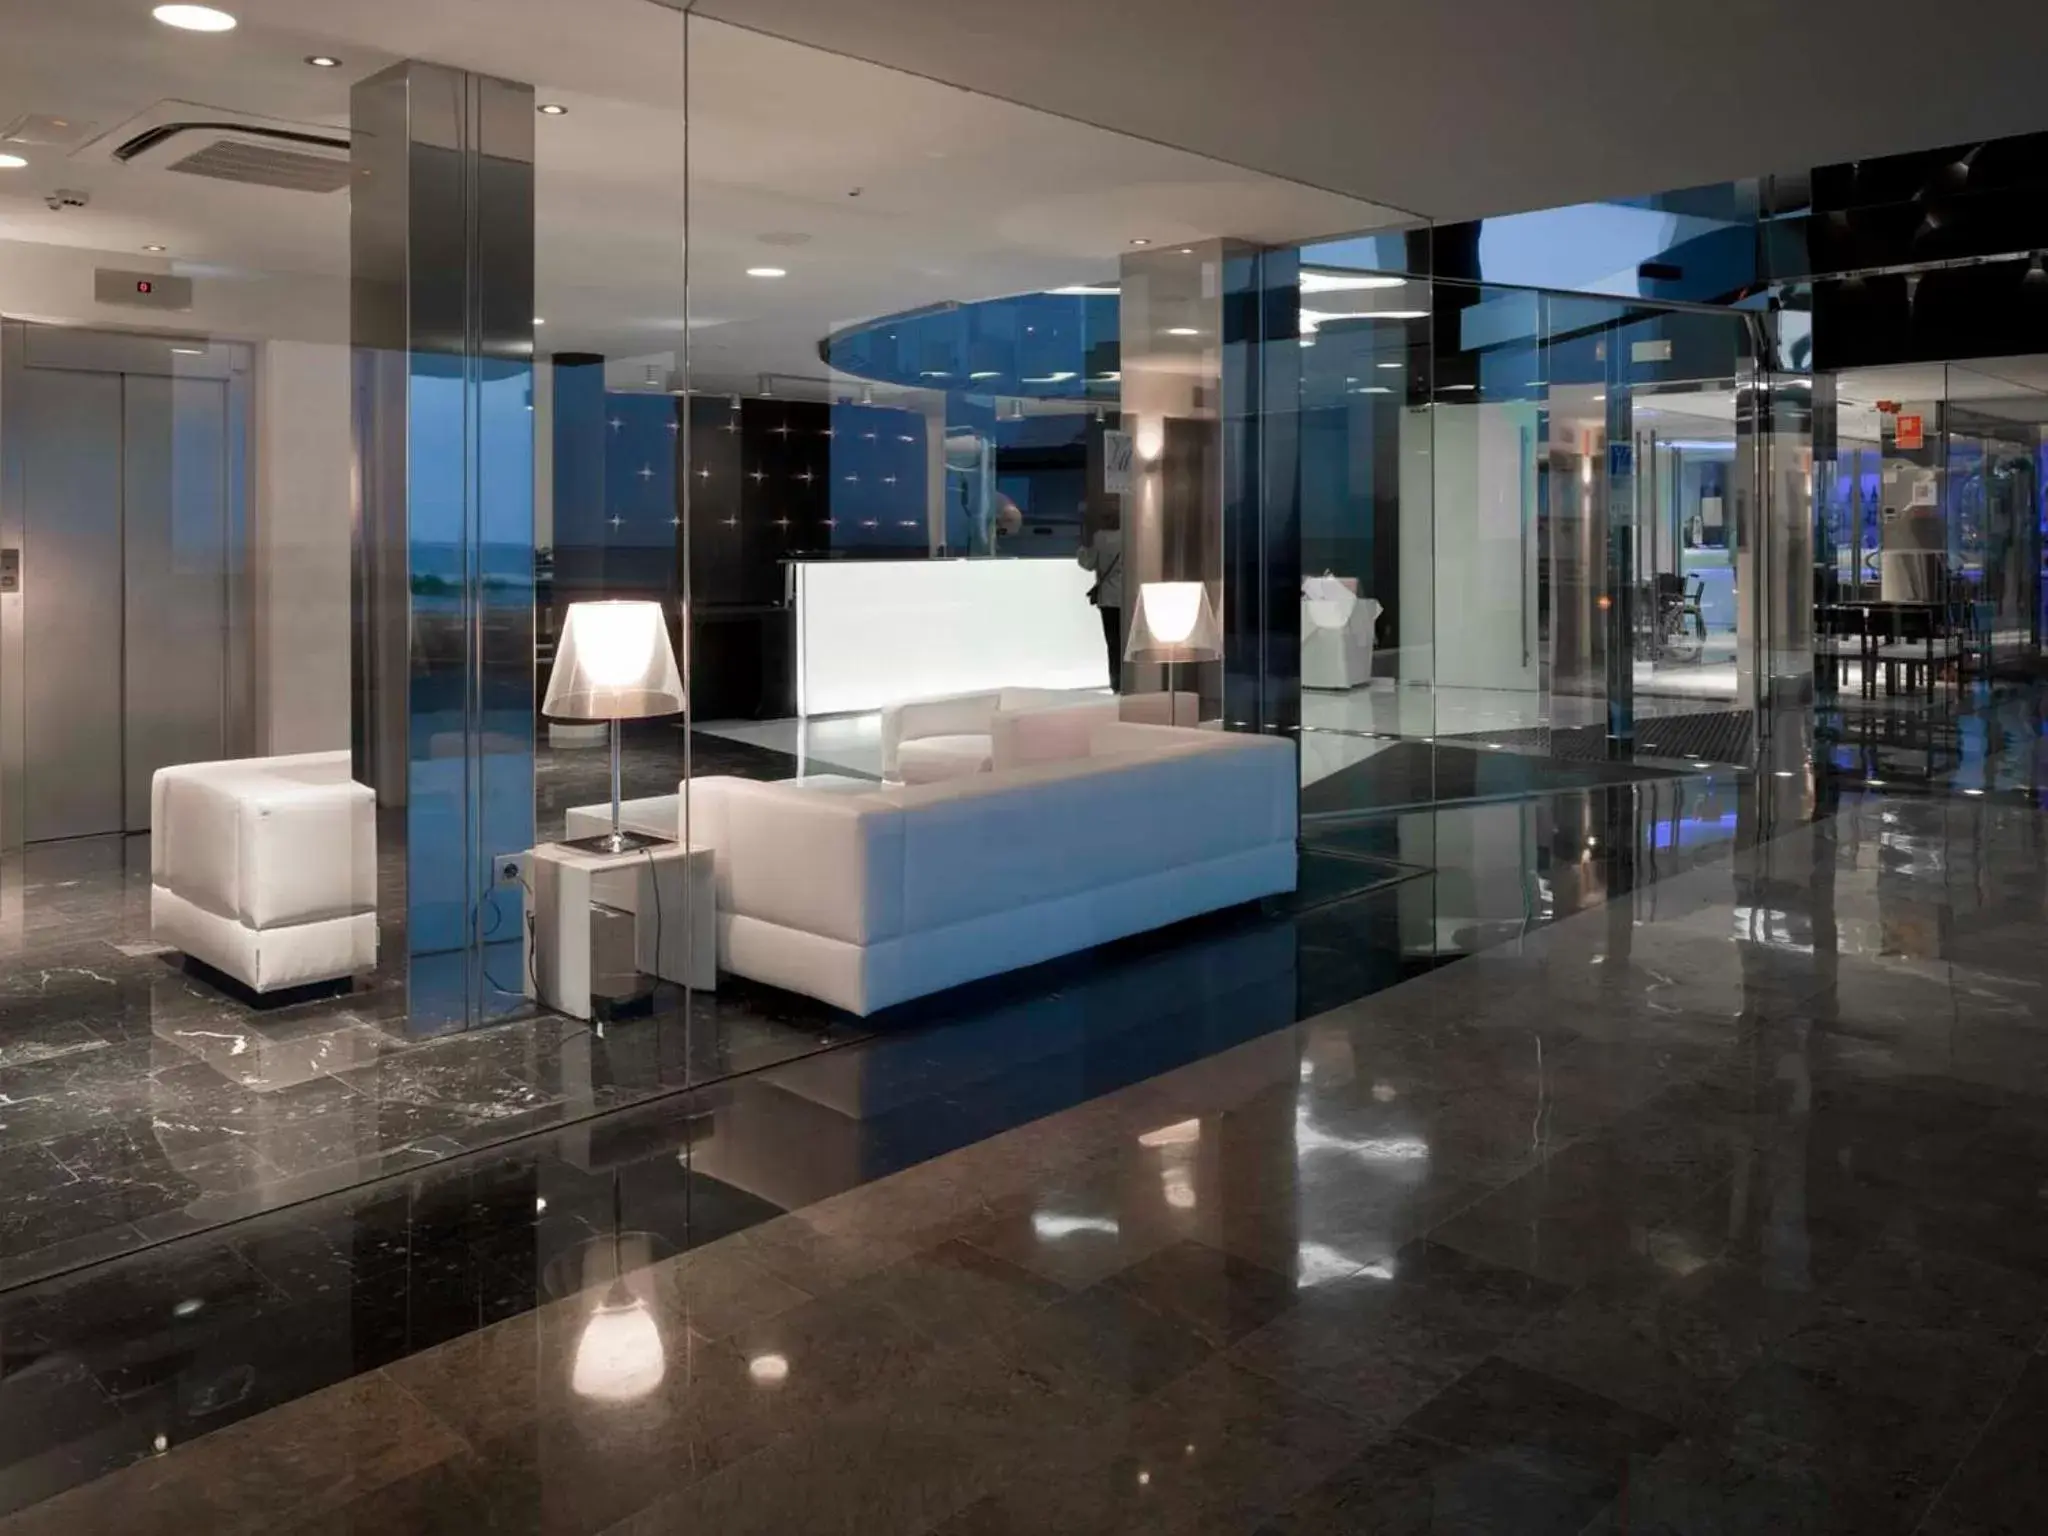 Lobby or reception in Hotel Villa del Mar